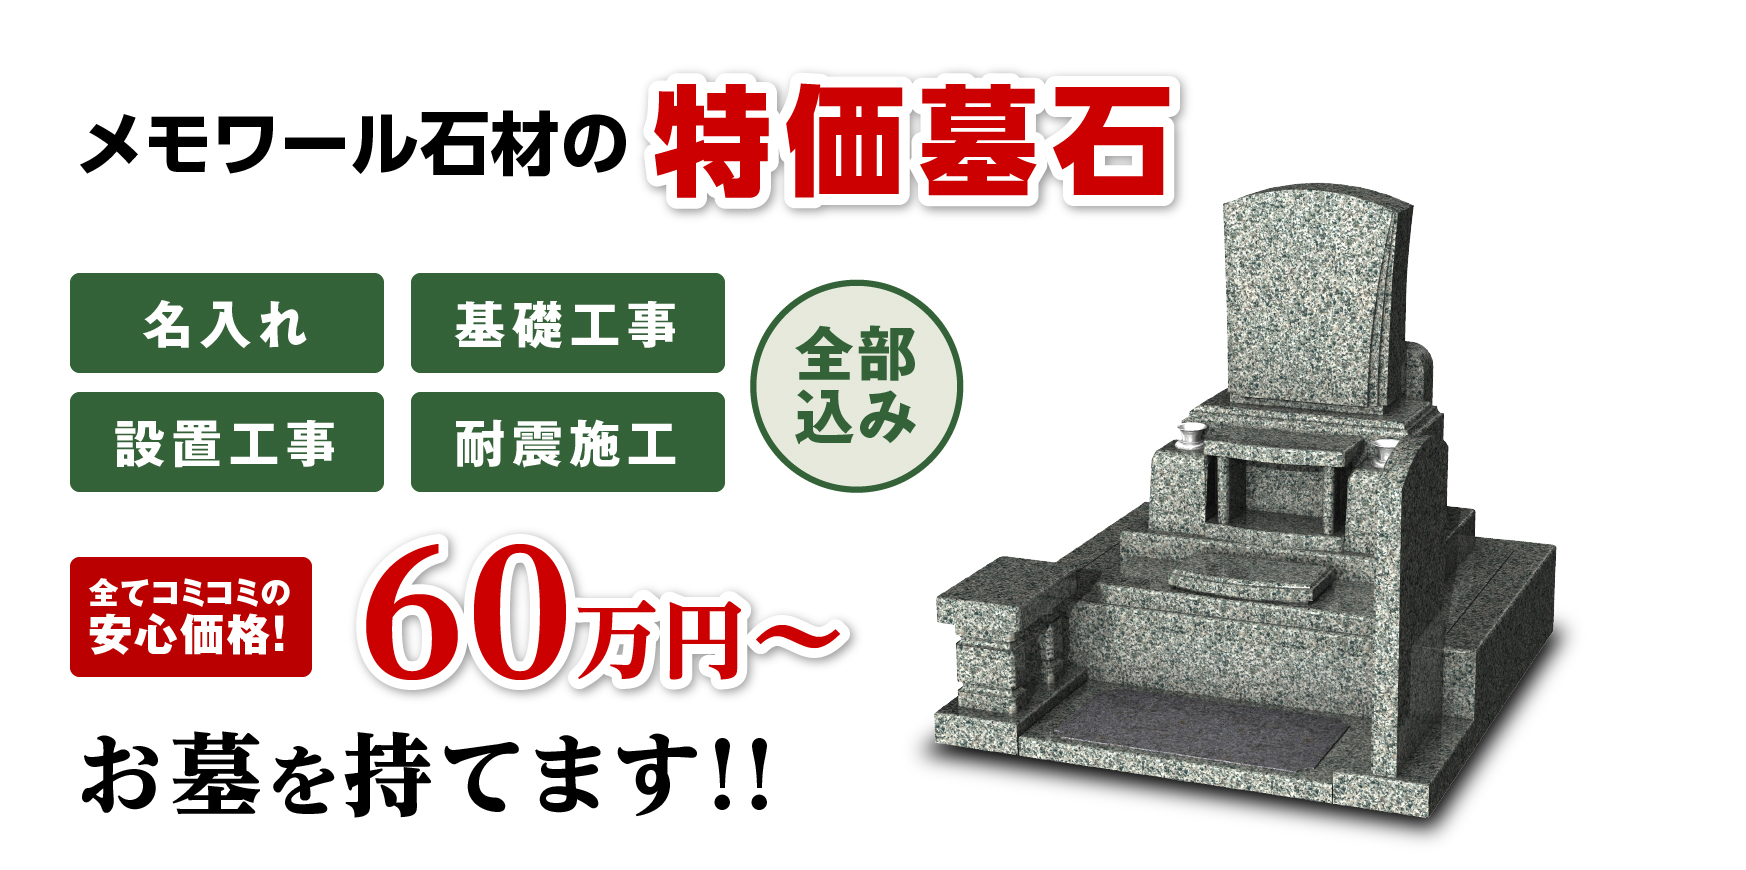 特価墓石54.8万円のお墓